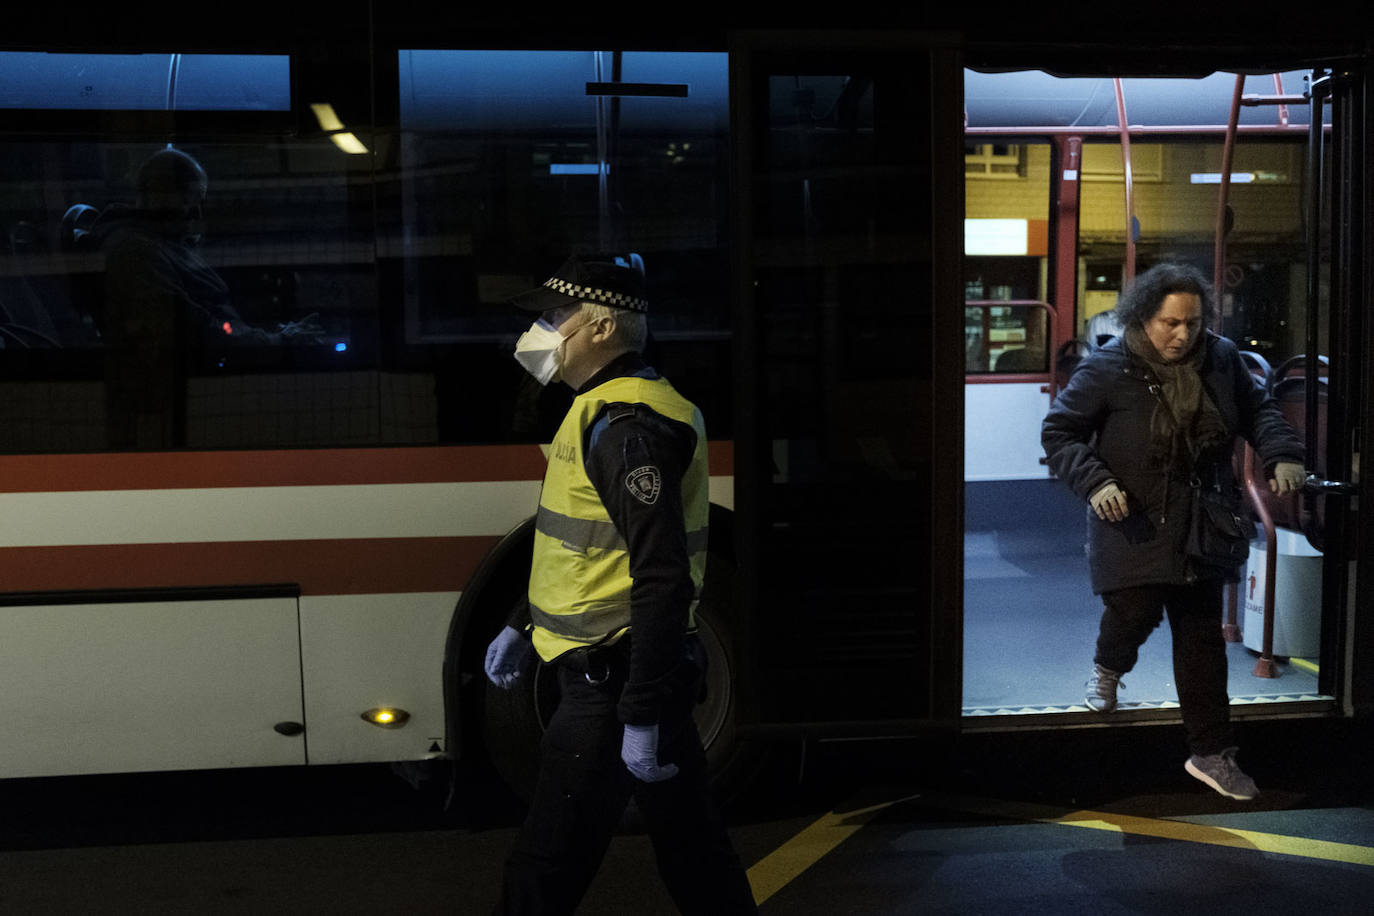 Agentes de los Cuerpos y Fuerzas de Seguridad del Estado realizan controles de tráfico diarios en las entradas y salidad de las ciudades de Asturias para asegurarse del cumplimiento de las medidas de confinamiento decretadas durante el Estado de Alarma a causa del coronavirus. 